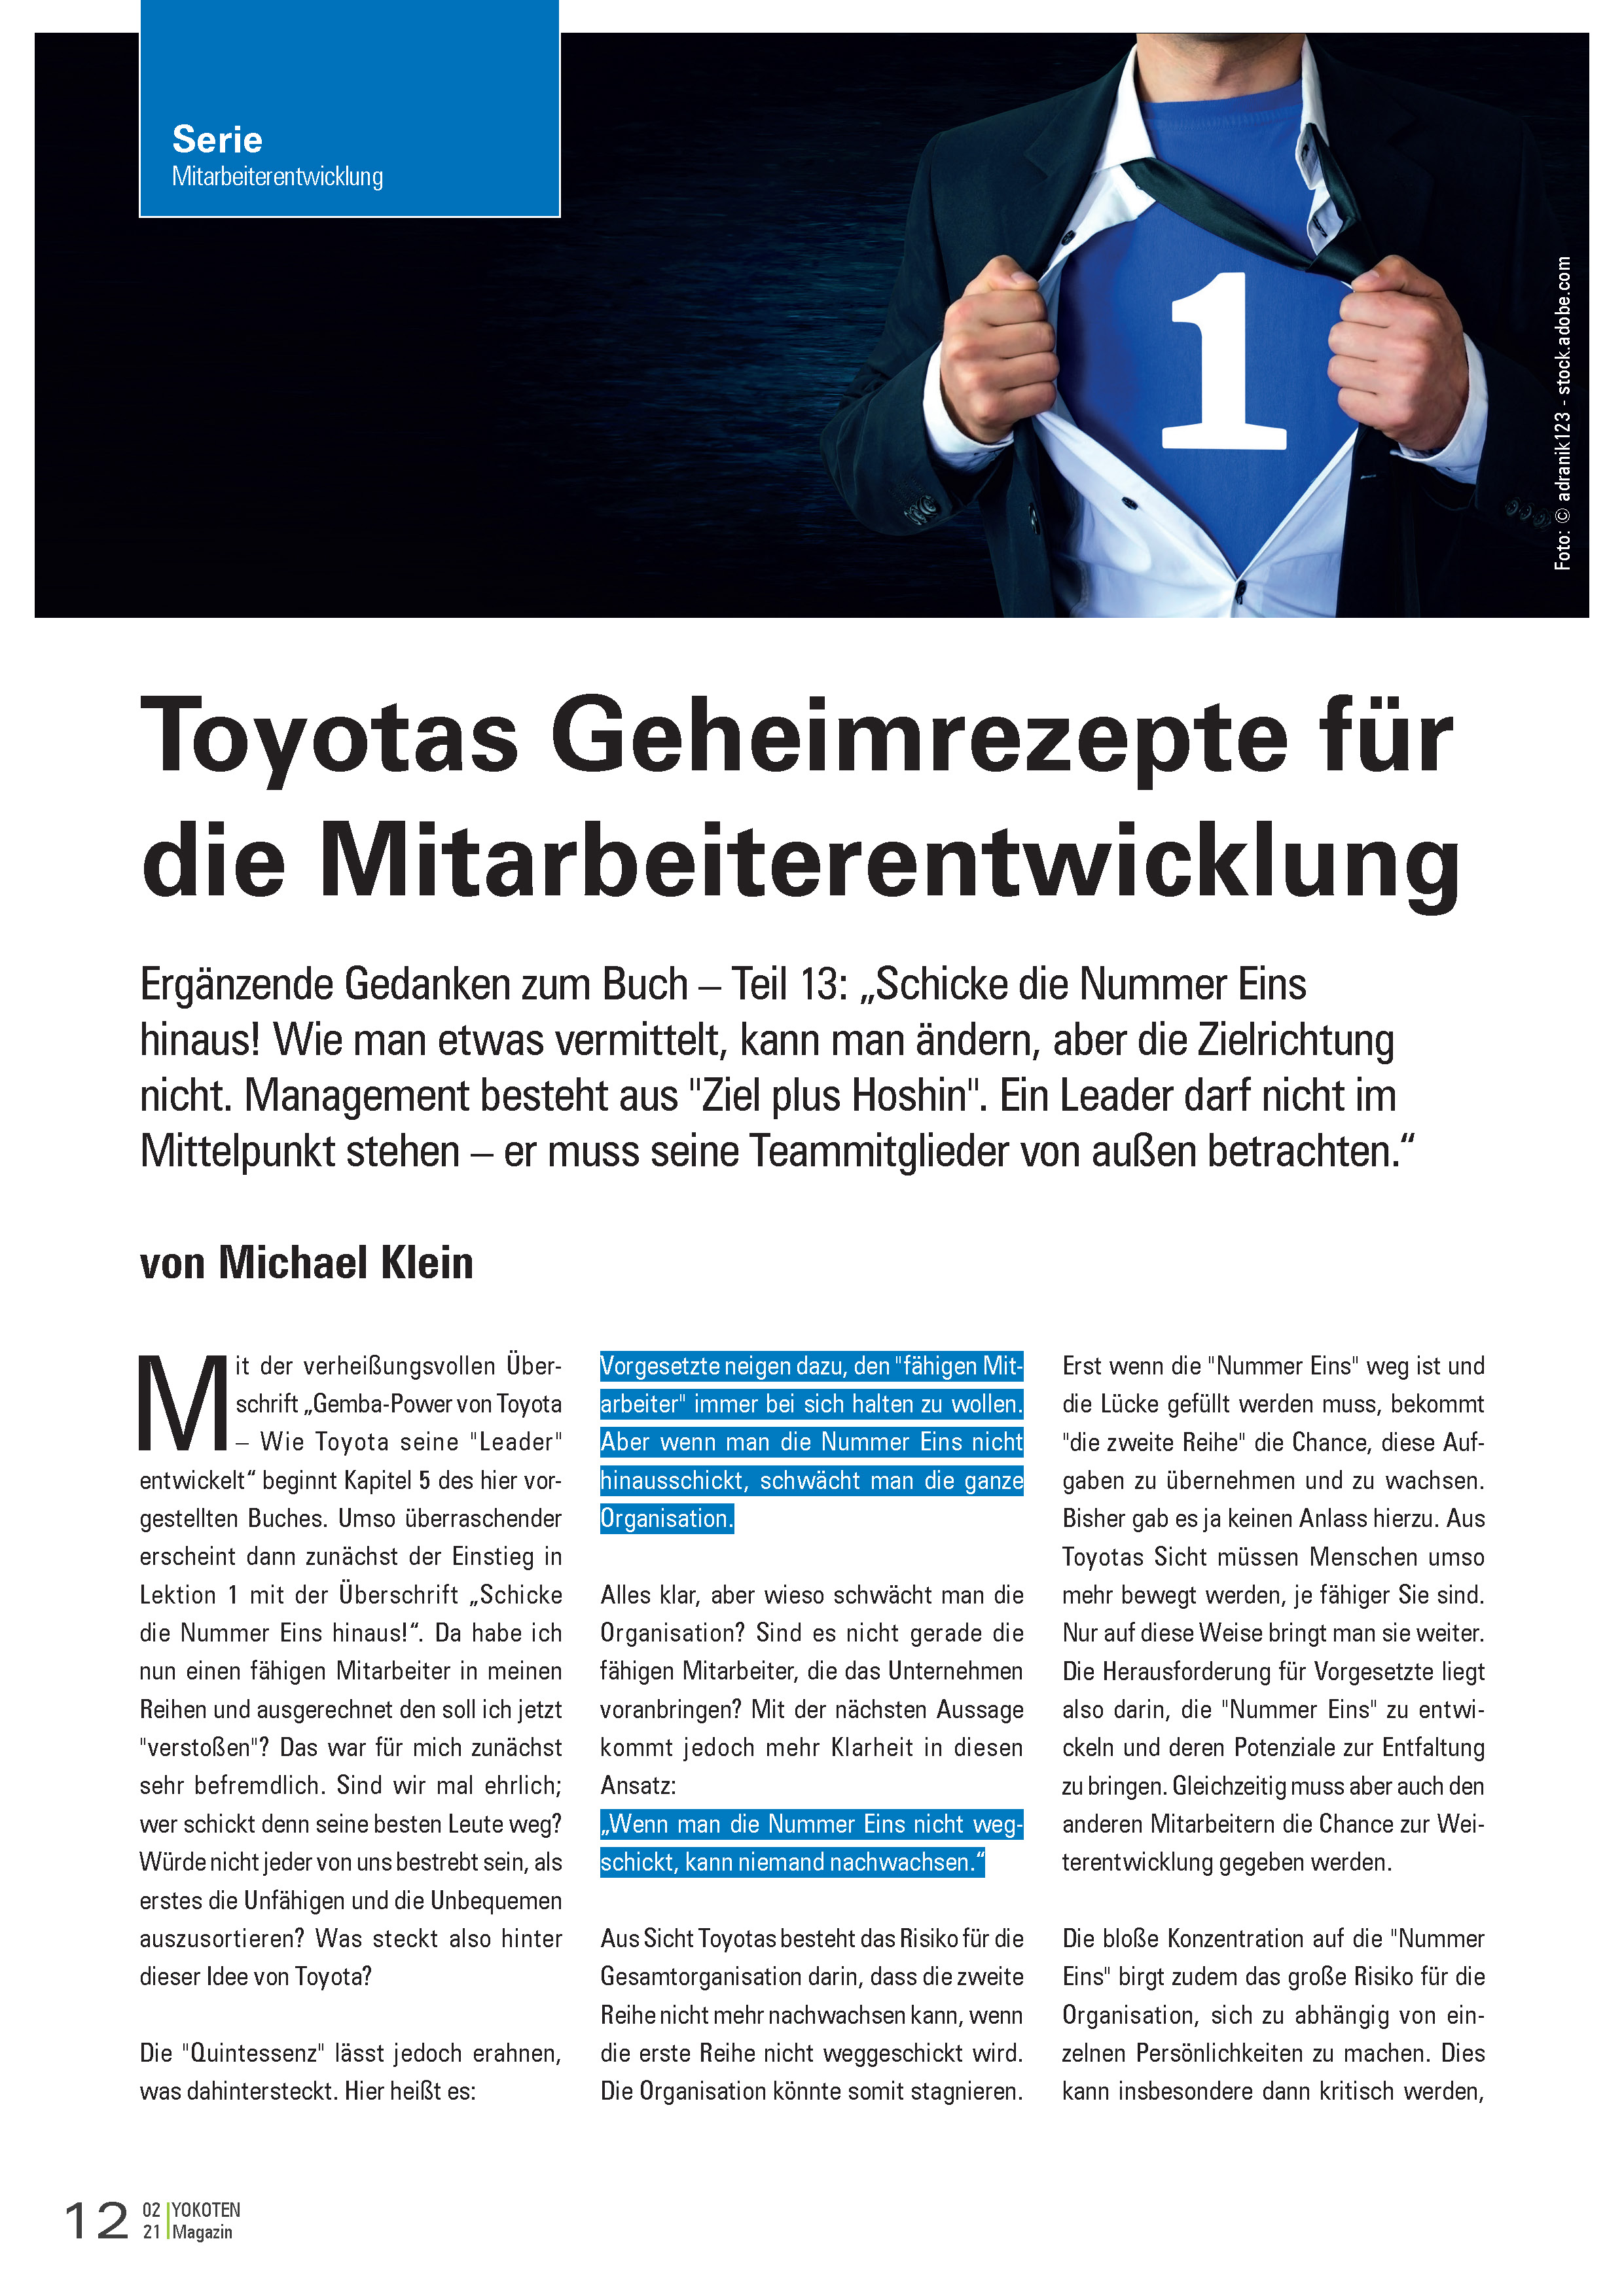 Toyotas Geheimrezepte für die Mitarbeiterentwicklung Teil 13 - Artikel aus Fachmagazin YOKOTEN 2021-02